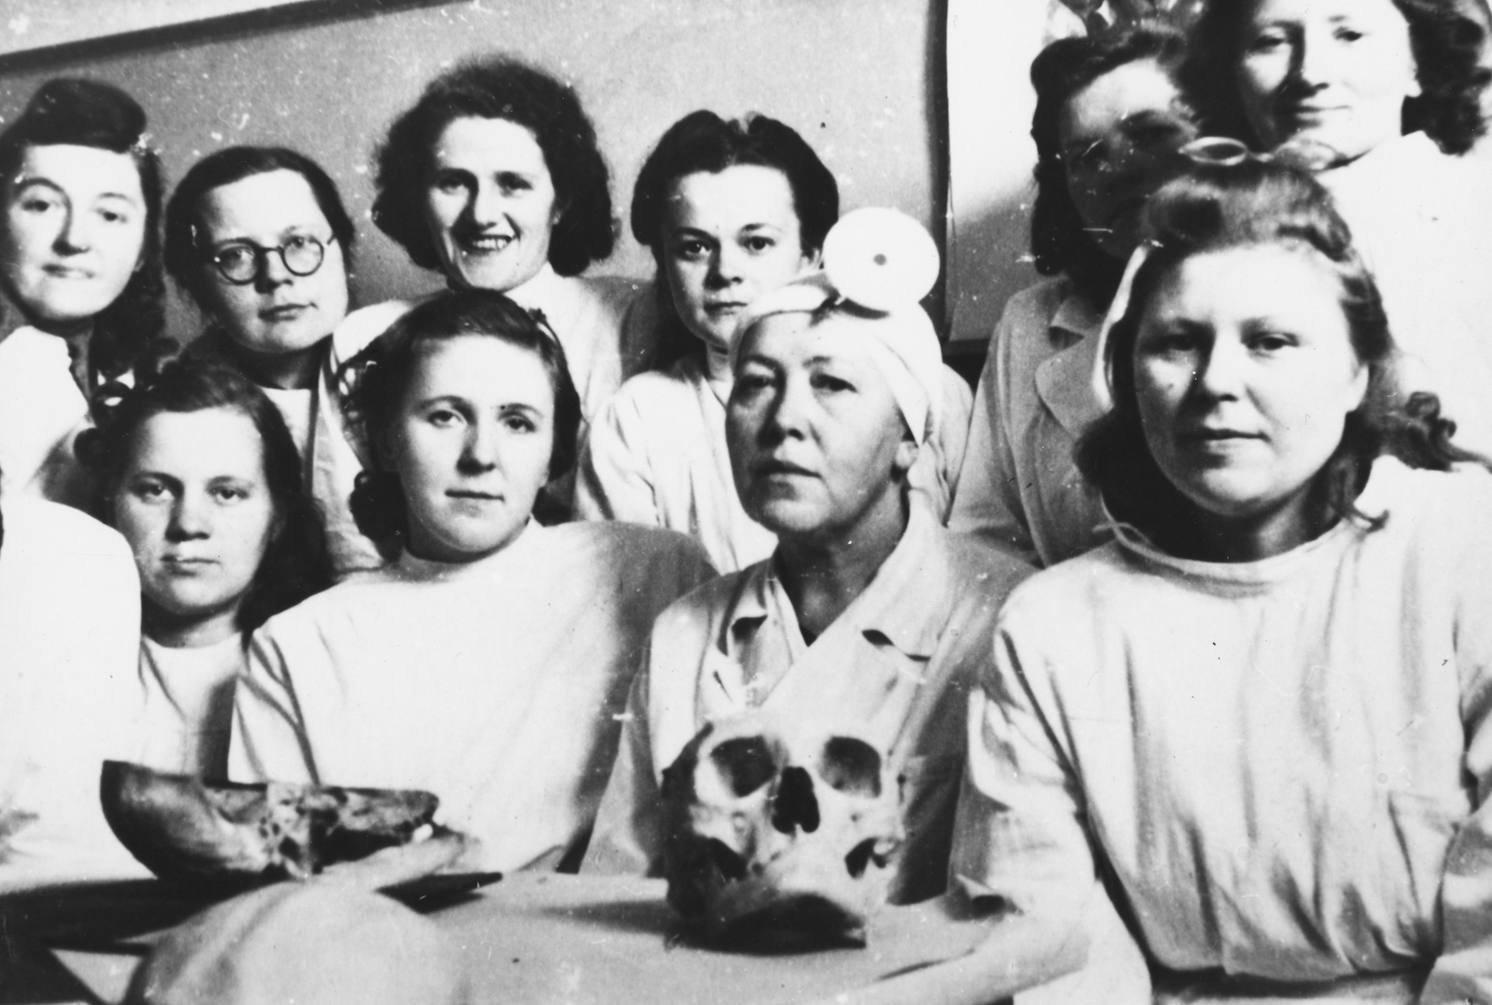 1. rinda 3. persona no kreisās puses Zenta Tiļļa (1900- 1960) kopā ar studentiem.